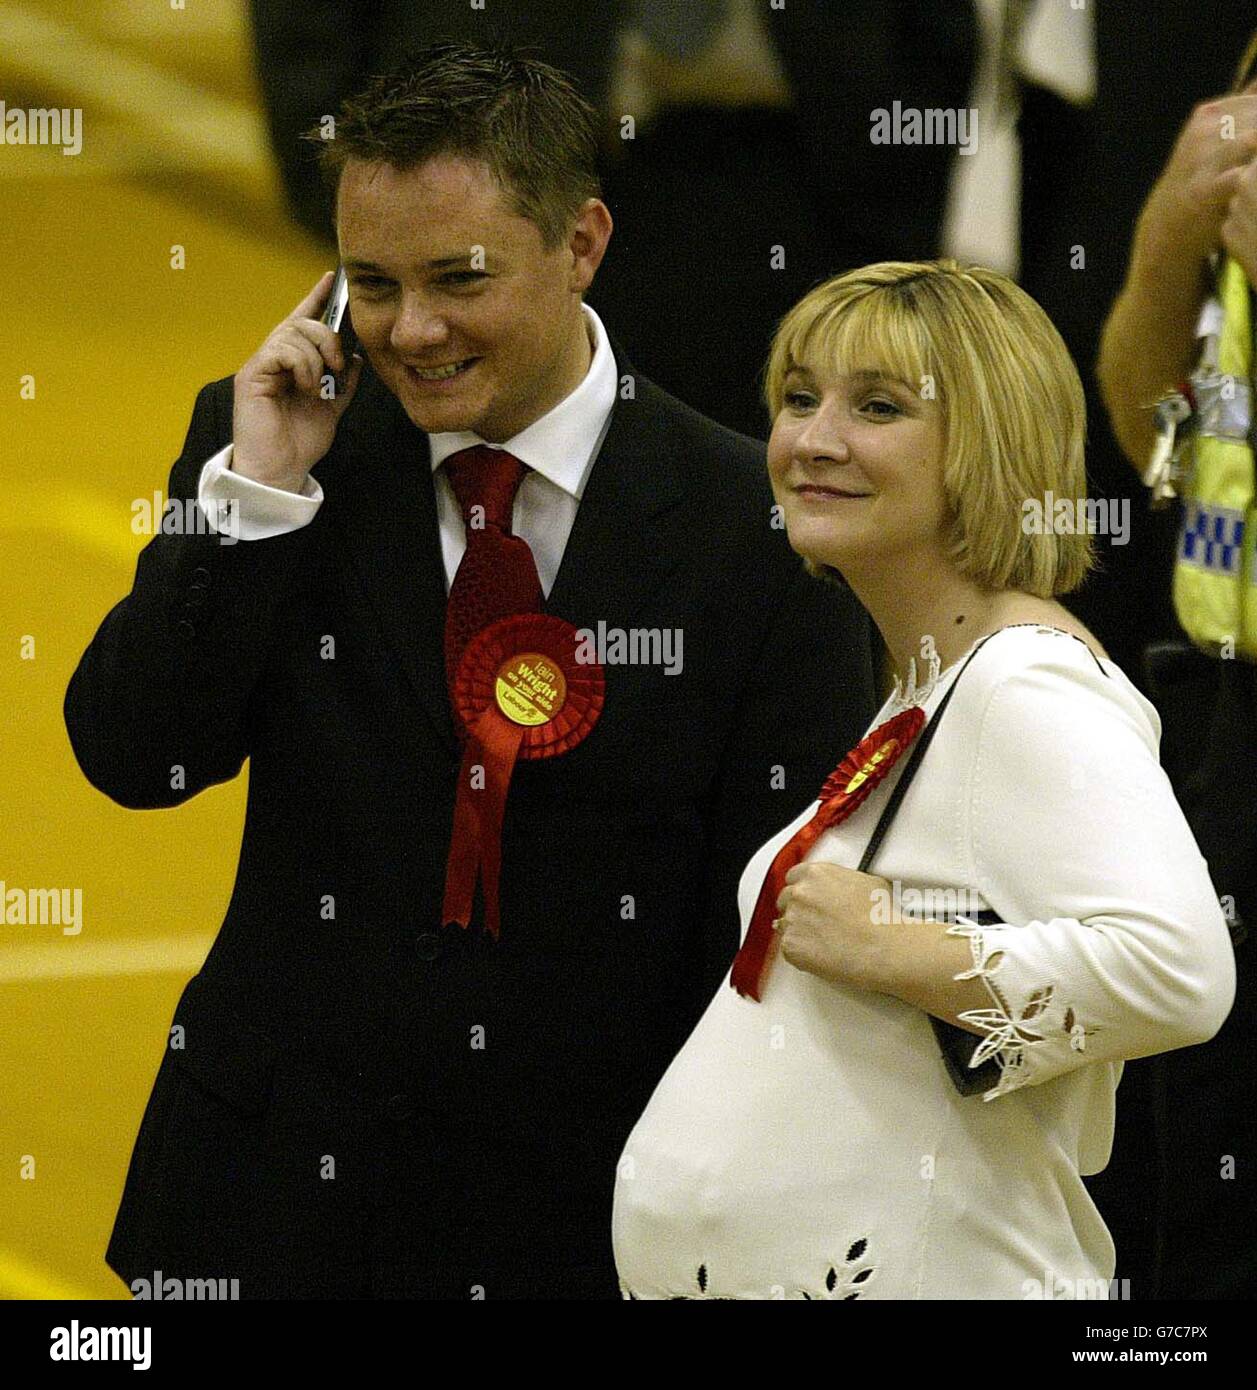 Der siegreiche Labour-Kandidat Iain Wright mit seiner Frau vor der Ankündigung, dass er die Hartlepool-Nachwahl von etwa 2,000 Wählern des Liberaldemokraten Jody Dunn gewann, der ihn knapp an zweiter Stelle antrat. Der UKIP-Kandidat Stephen Allison belegte den dritten Platz, während der konservative Kandidat Jeremy Middleton den vierten Platz belegte. Der Sitz wurde frei, als der ehemalige Kabinettsminister Peter Mandelson zurücktrat, um EU-Kommissar zu werden. Stockfoto